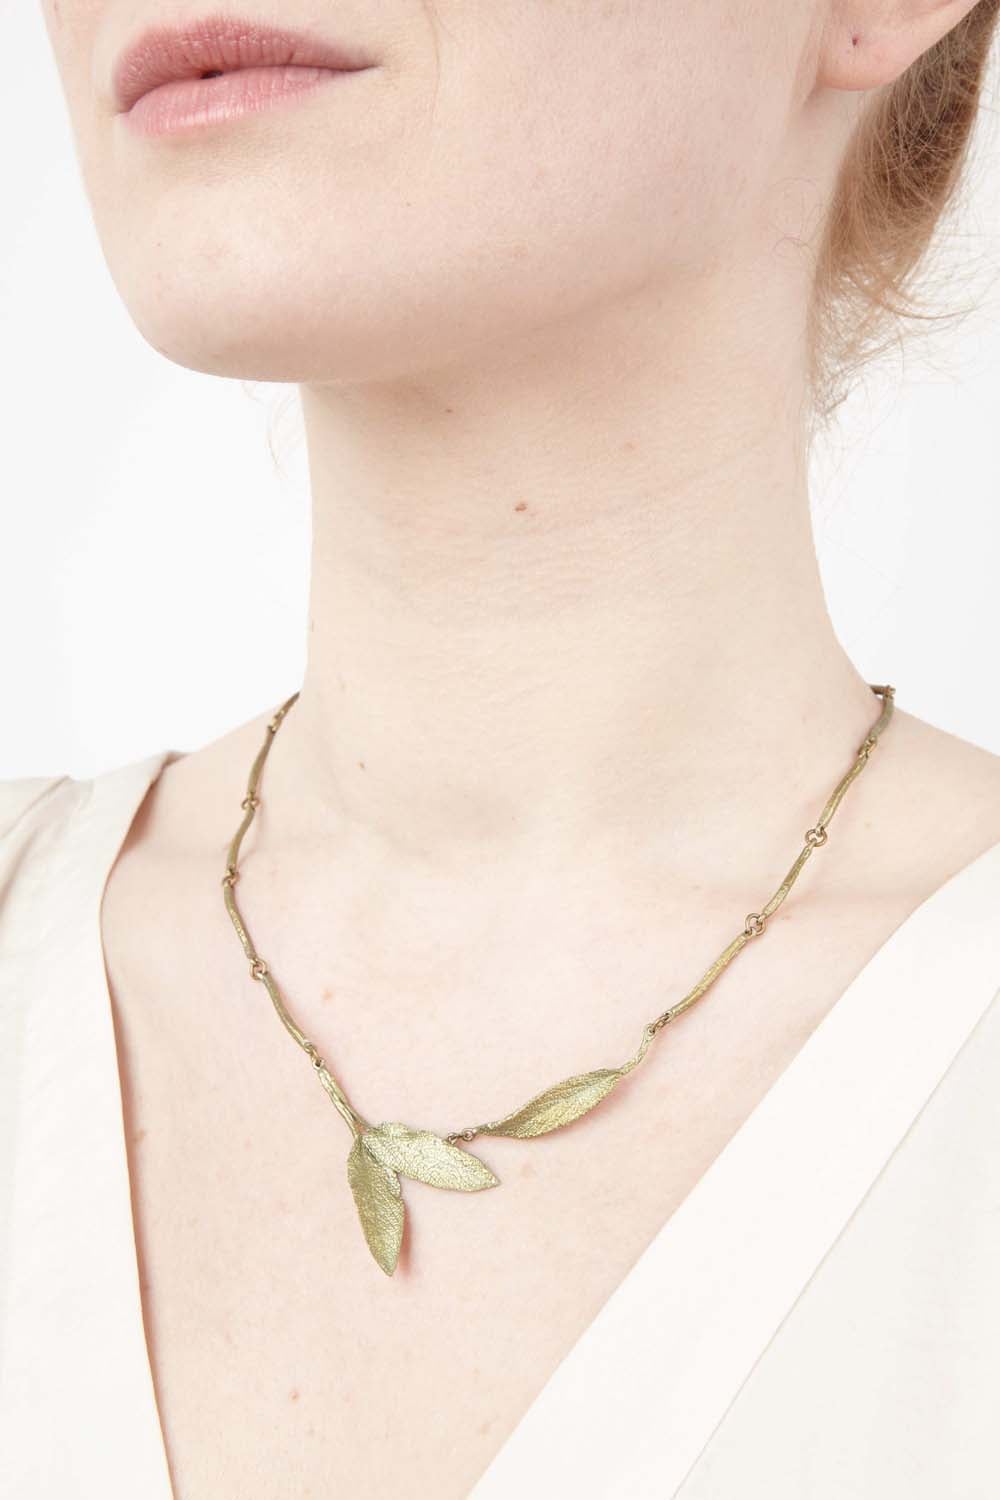 セージのネックレス / Sage Necklace